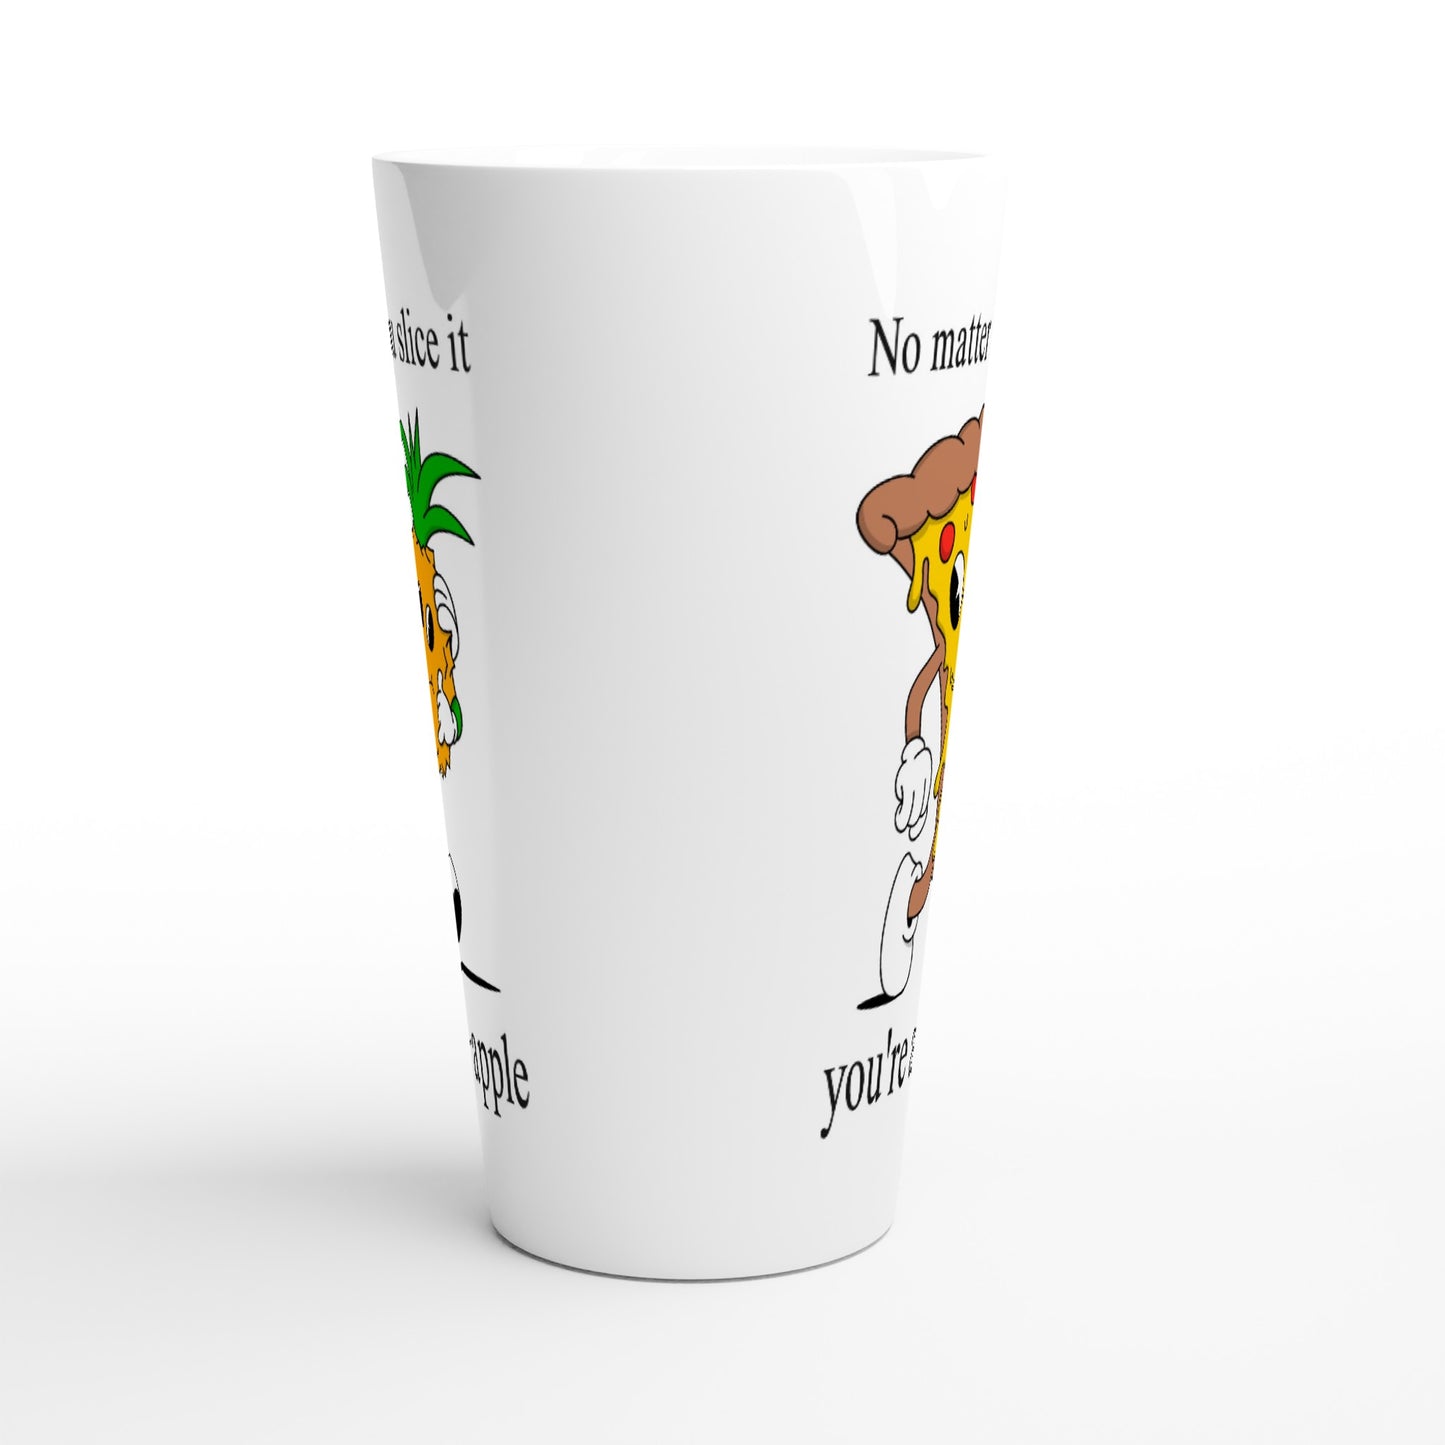 Pineapple Pizza, Fine-apple - White Latte 17oz Ceramic Mug Latte Mug food